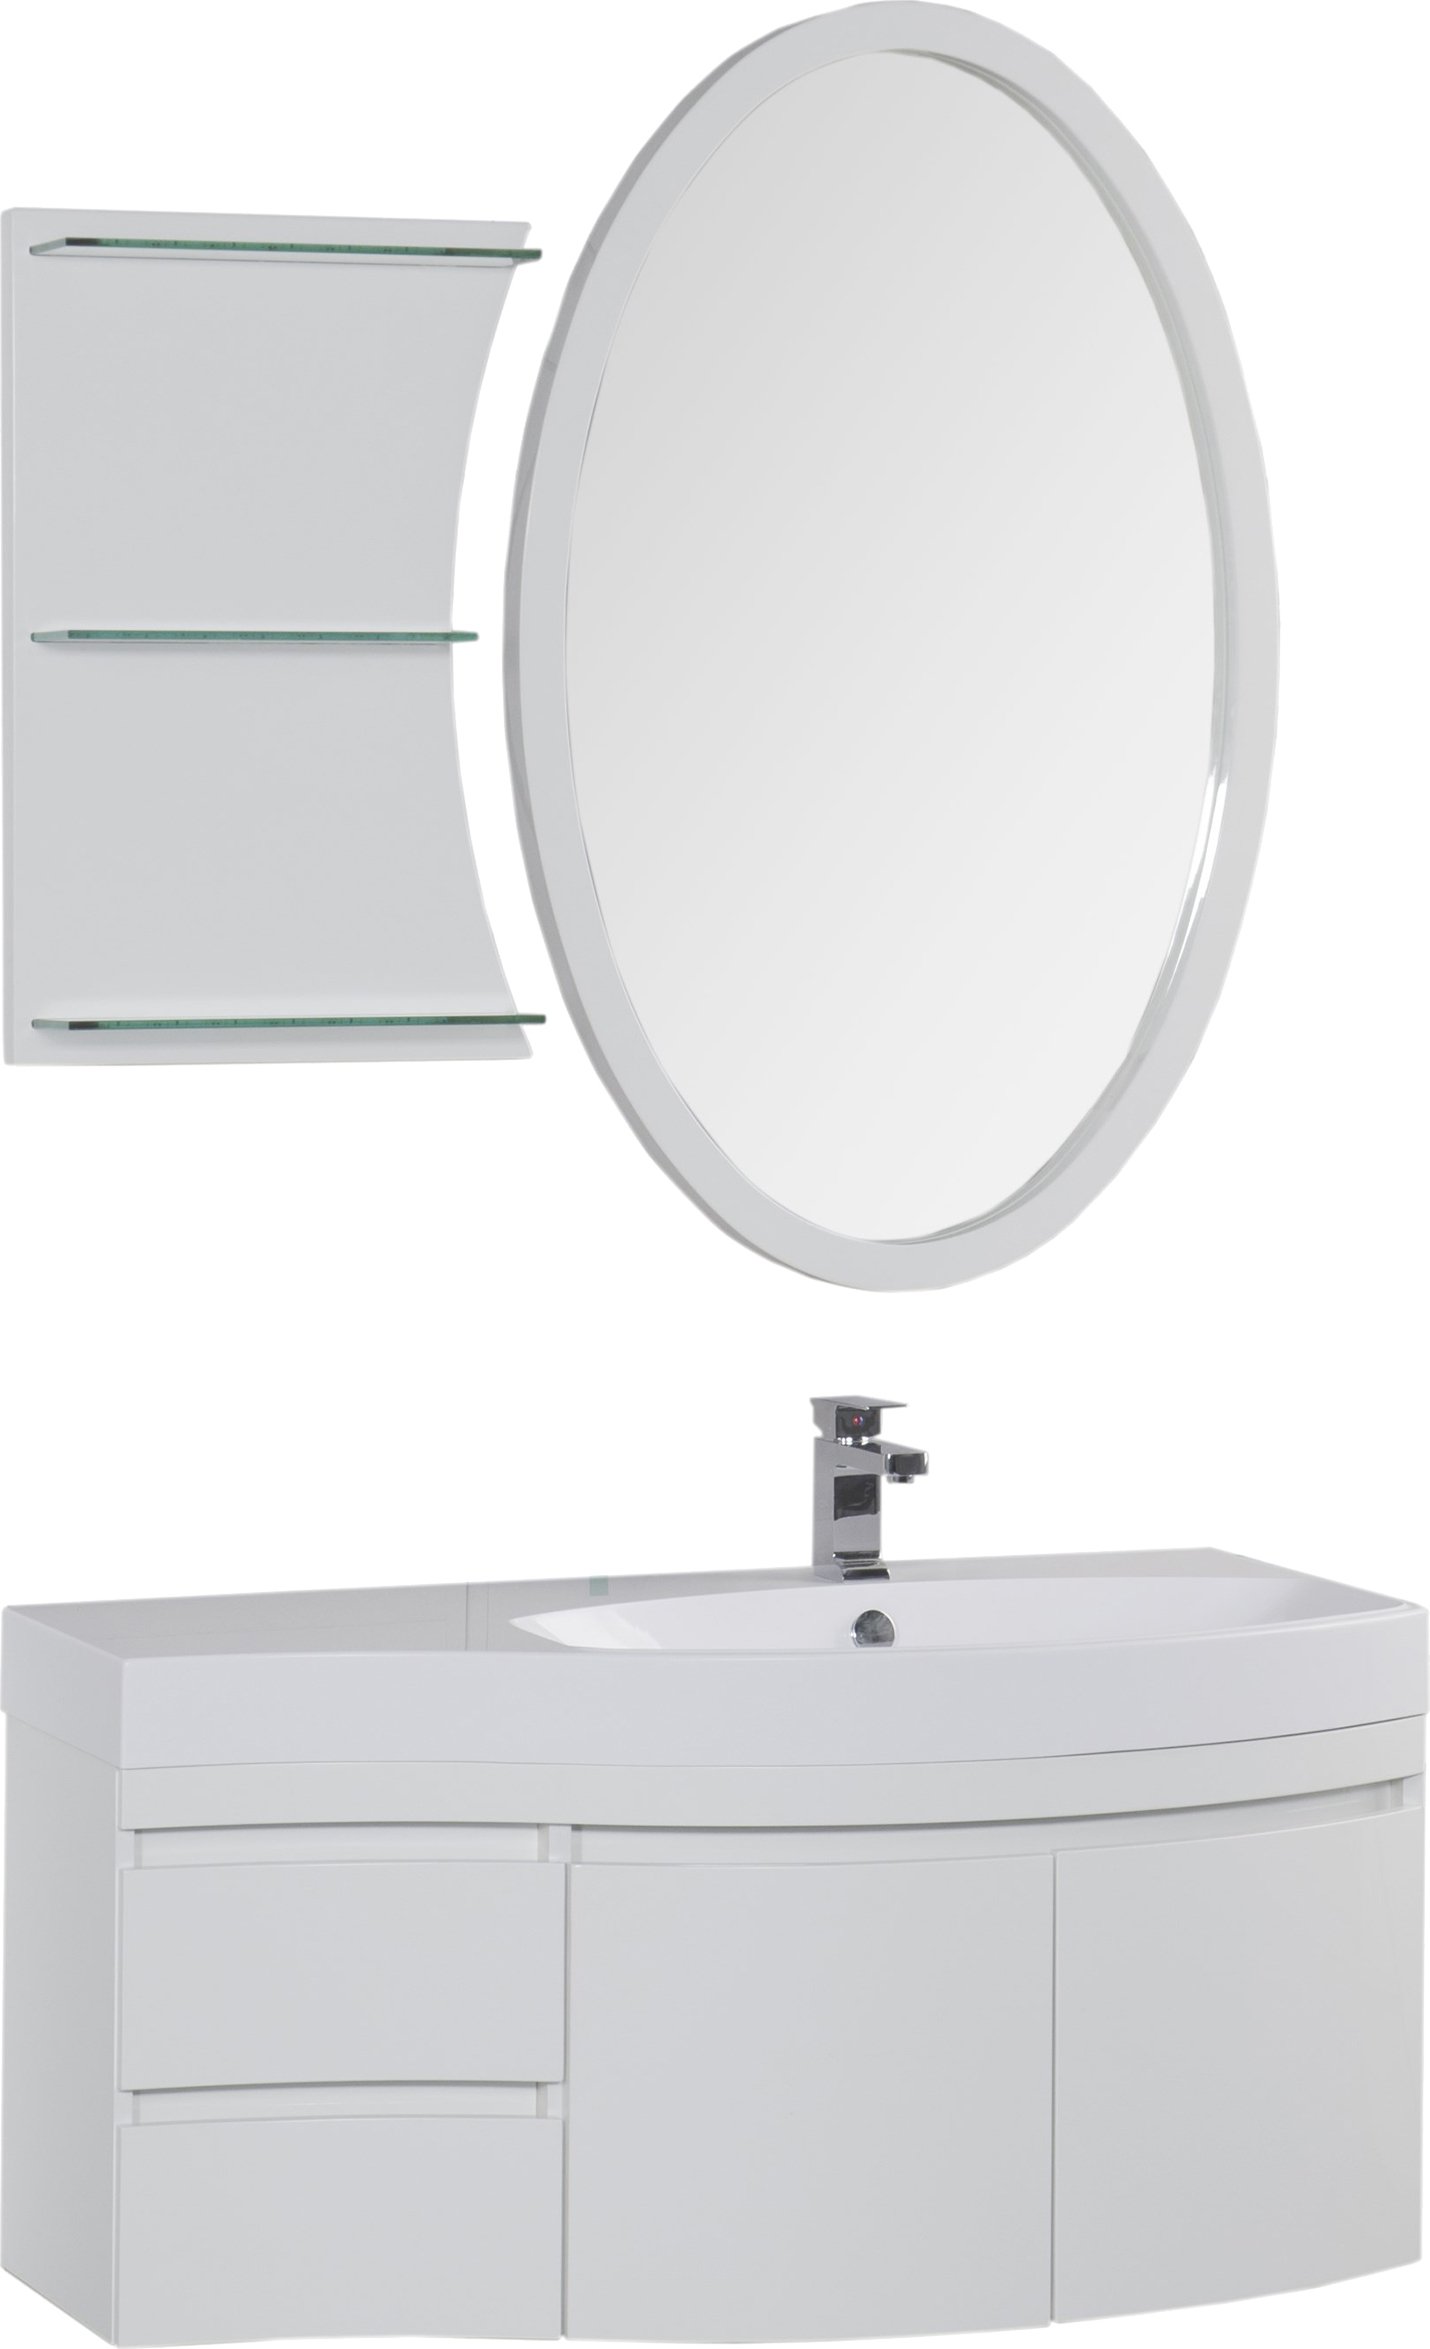 Мебель для ванной Aquanet Опера 115 белая R, размер 115, цвет белый - фото 1